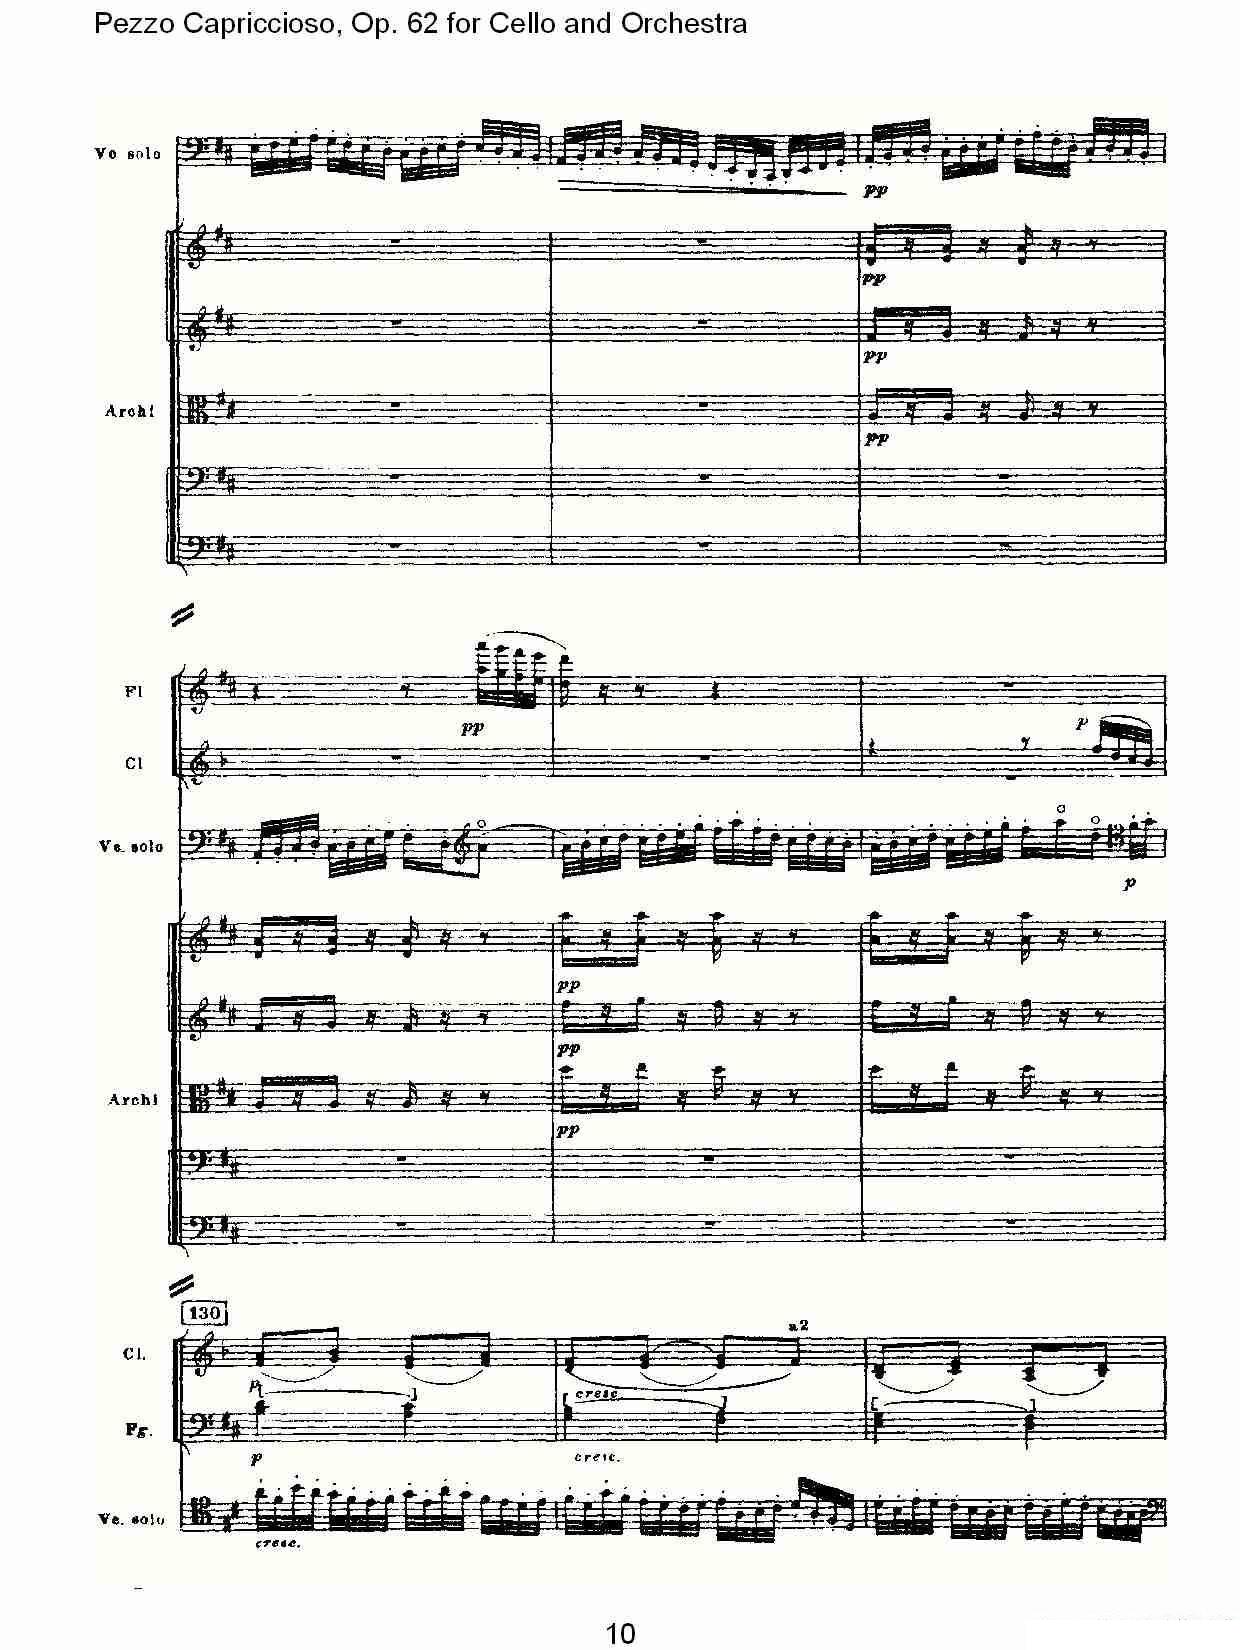 彼得·伊利奇·柴可夫斯基《Pezzo Capriccioso, Op.62》提琴谱（第10页）